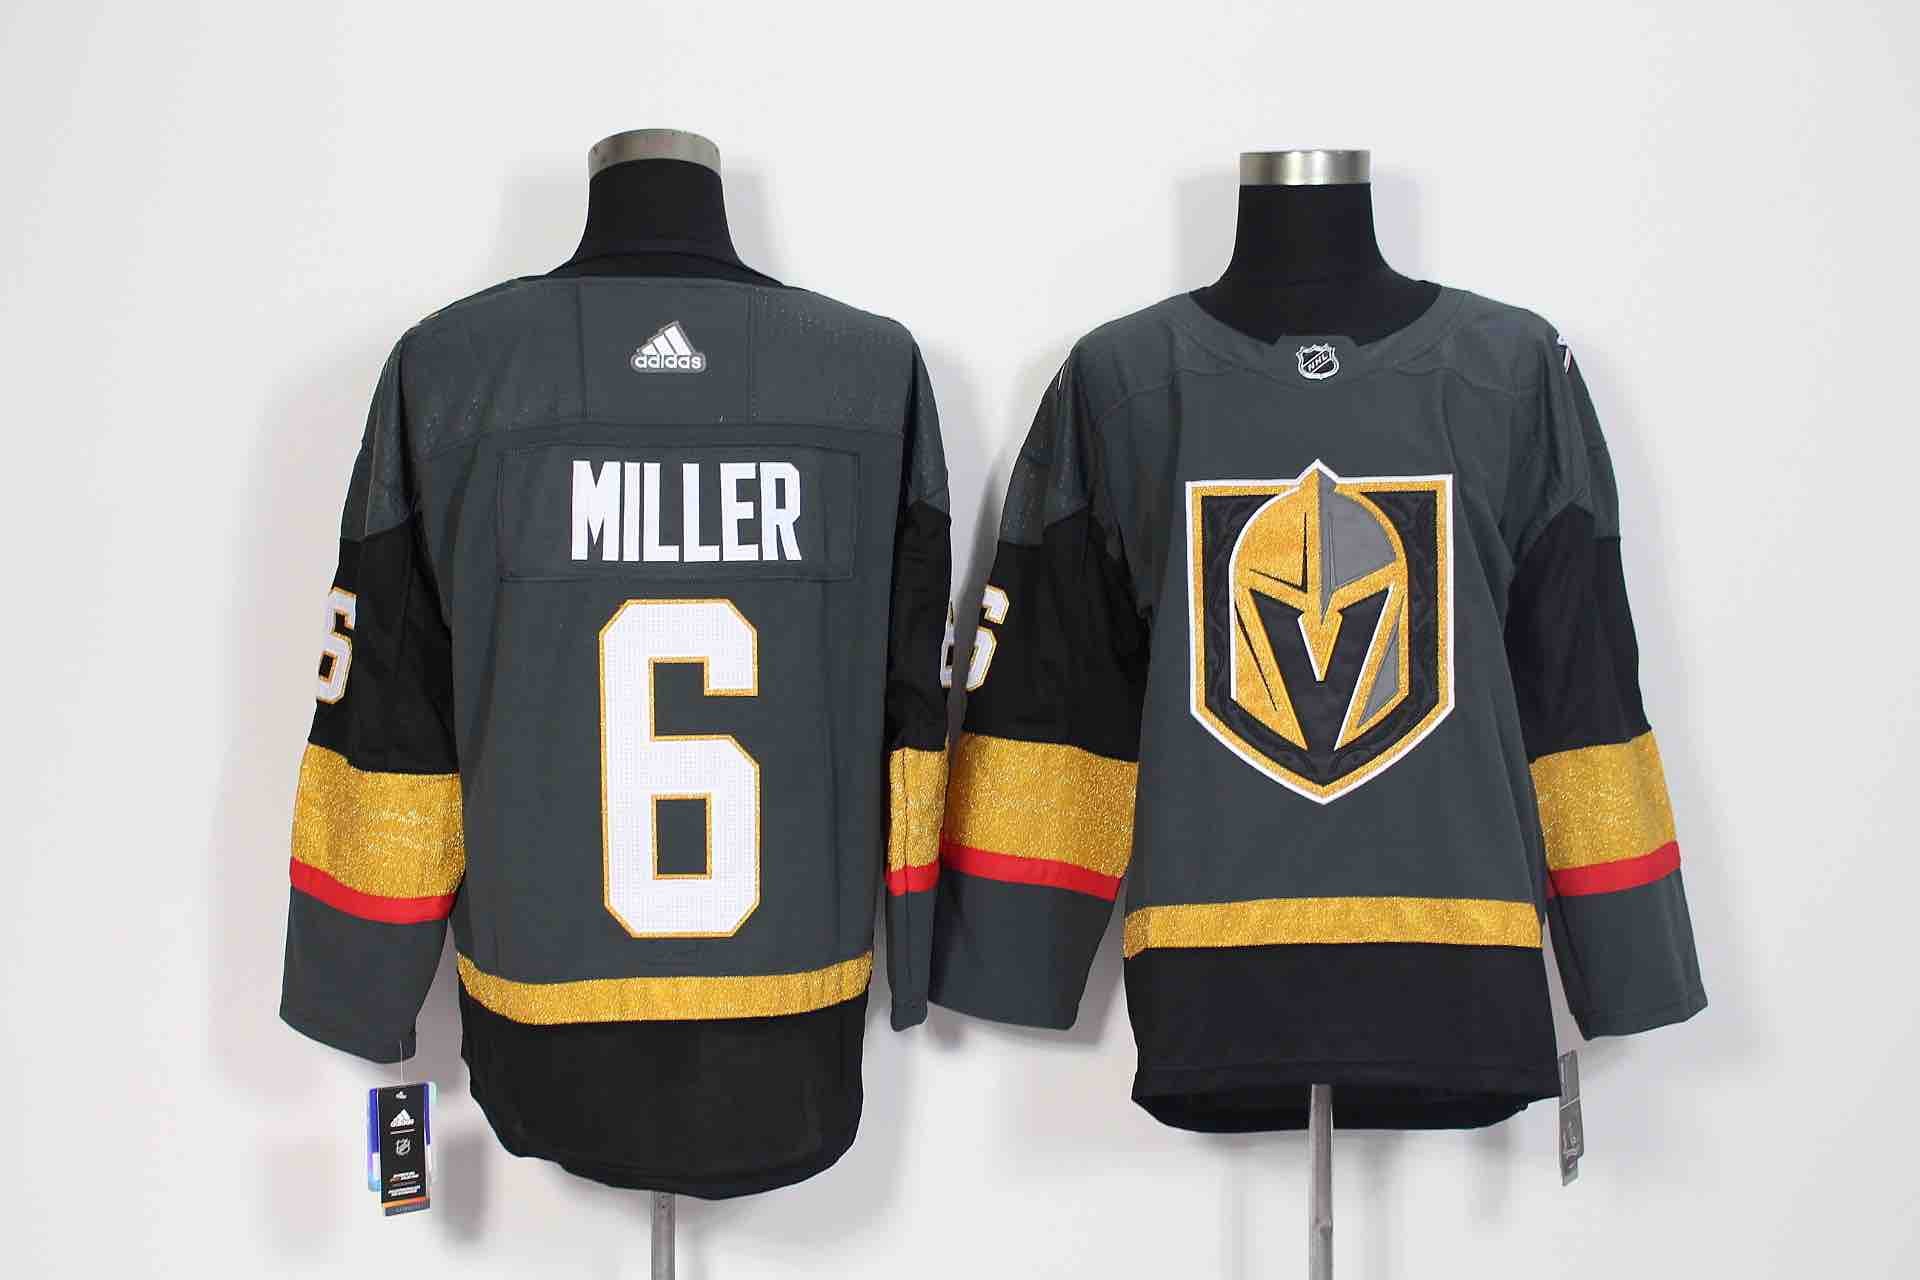 Adidas Mens Vegas Golden Knights #6 Miller Hockey Jersey